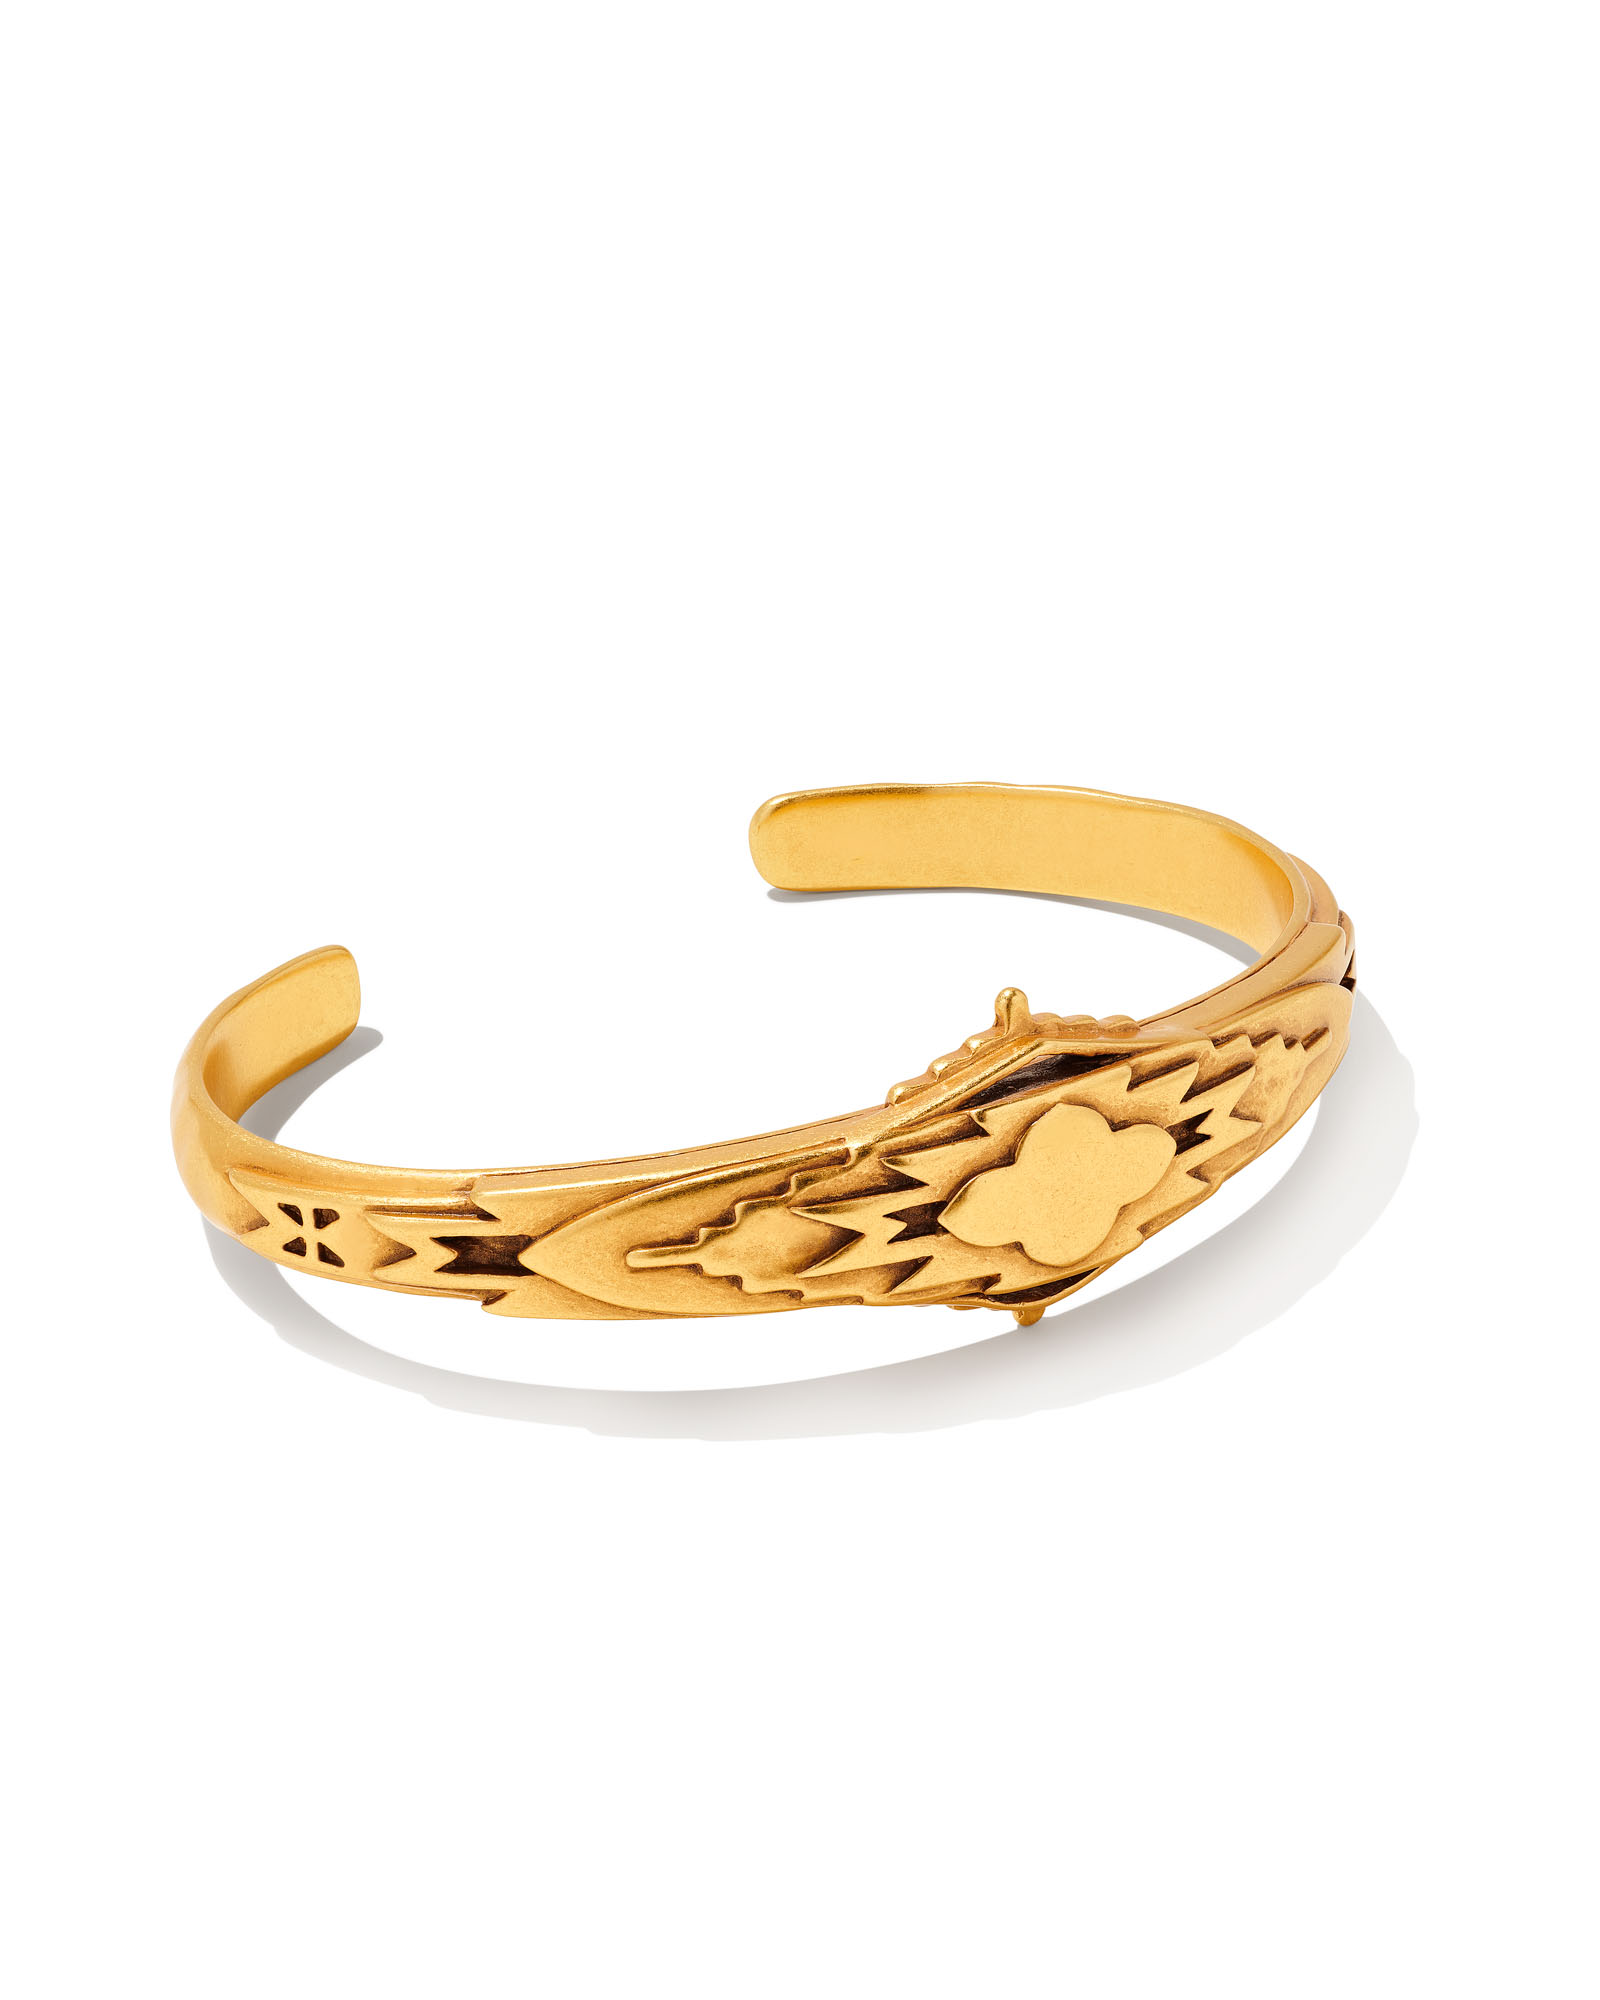 Kendra Scott 14k Gold-Plated Multicolor Star Slider Bracelet - Macy's